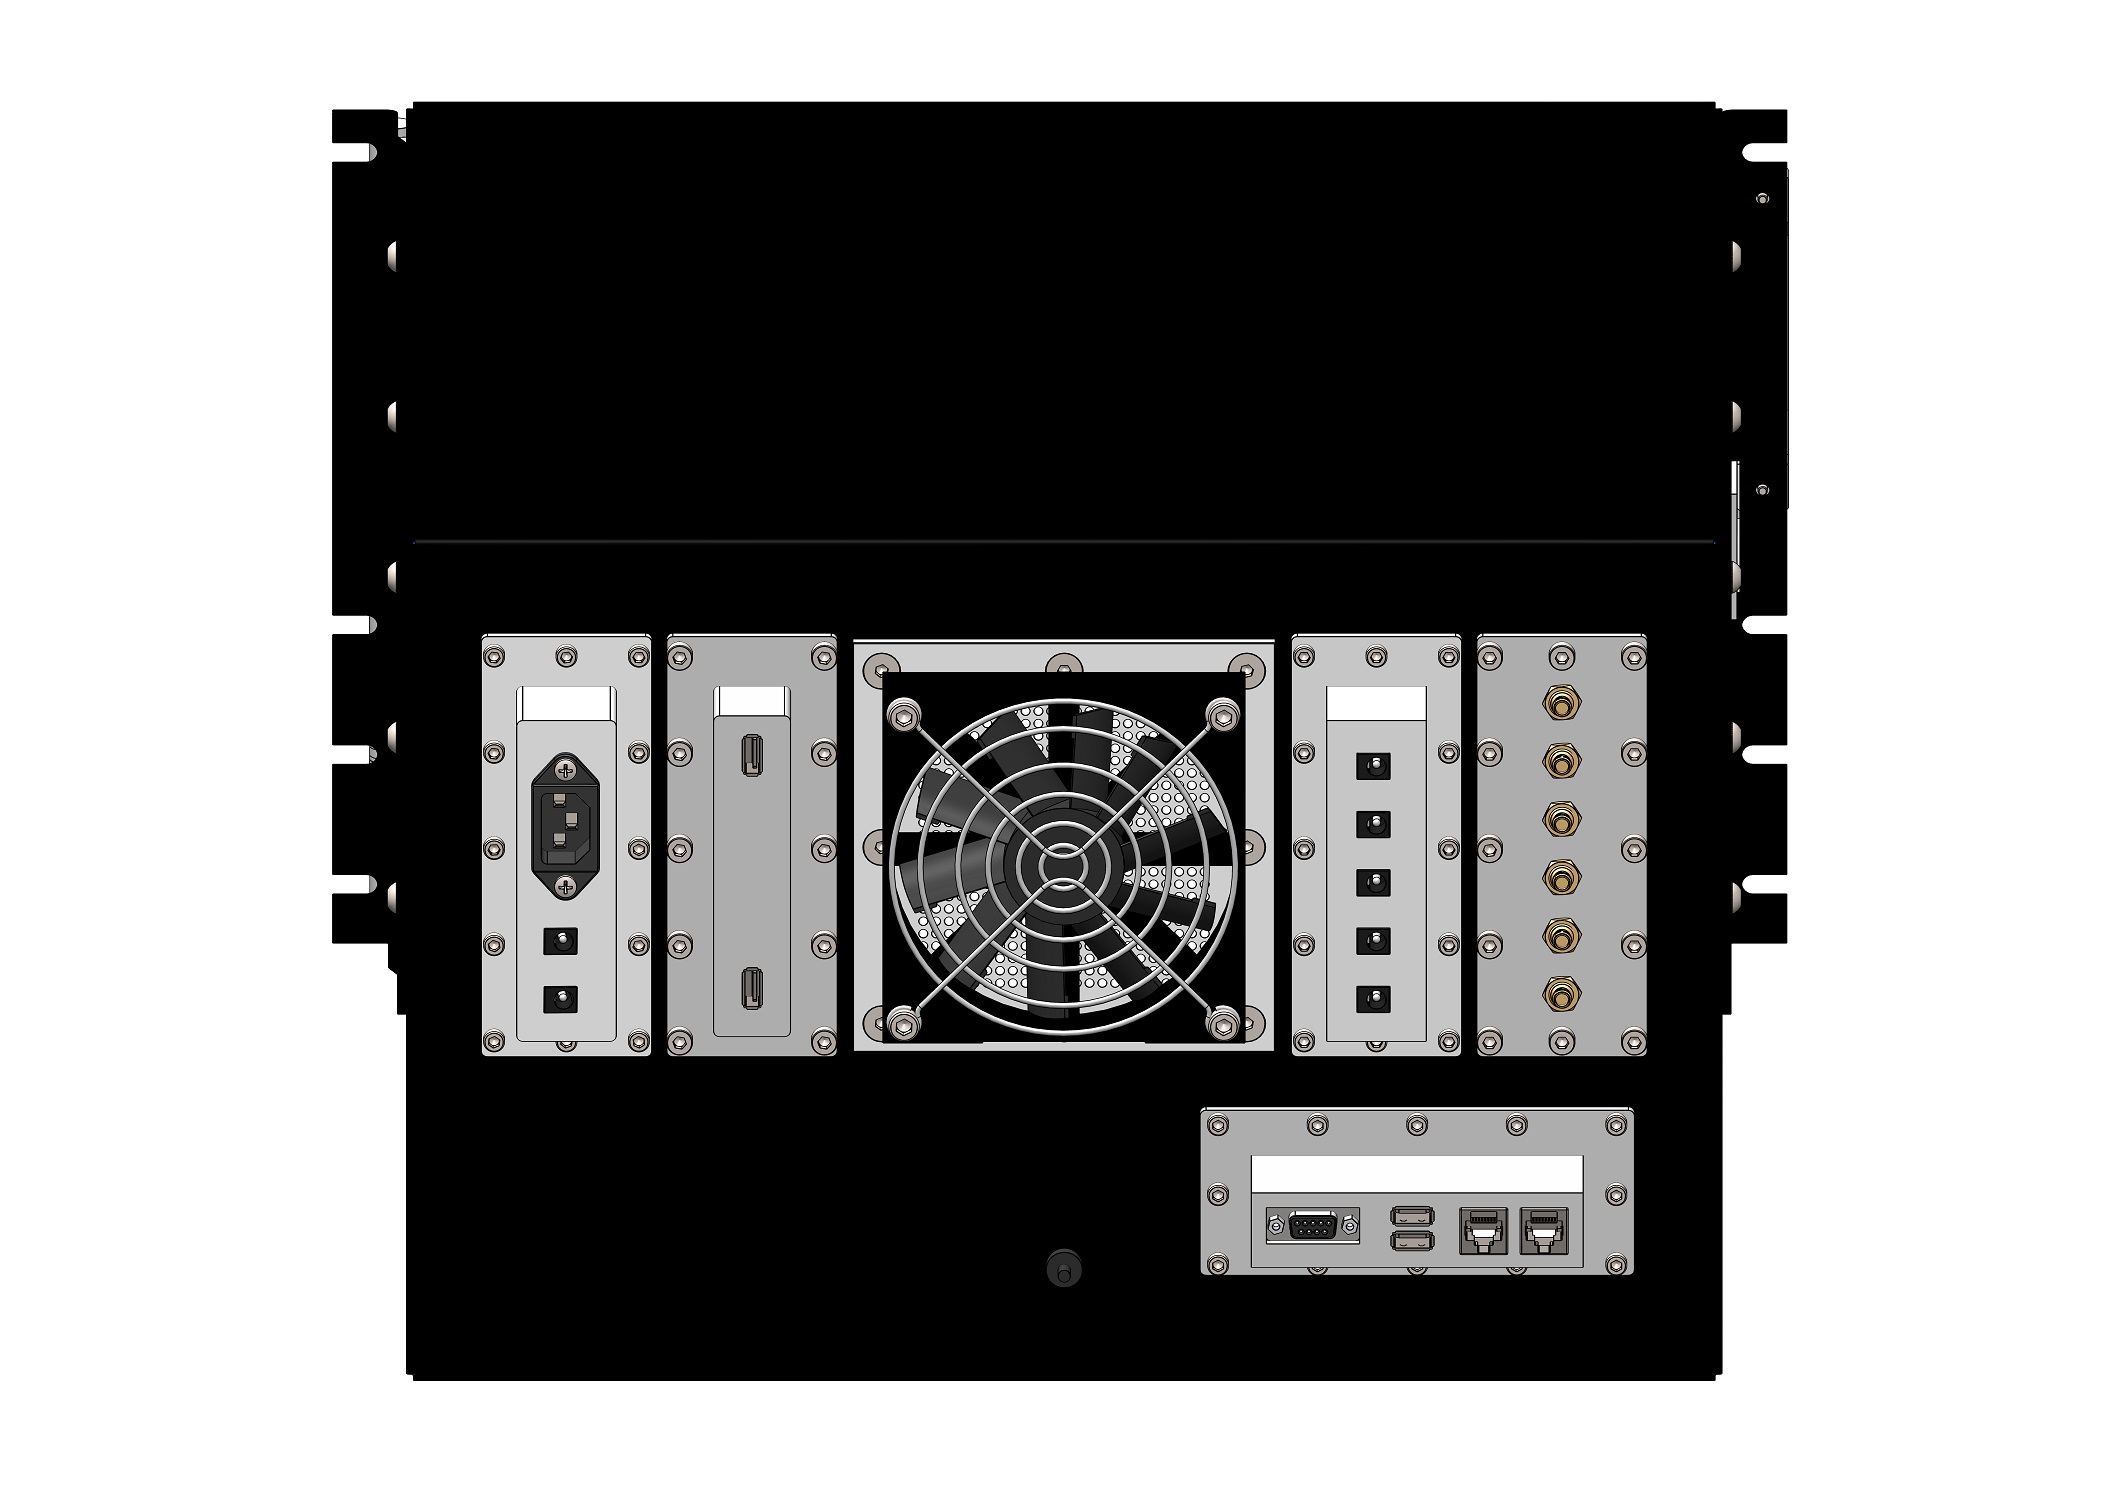 HDRF-1160-W RF Shield Test Box